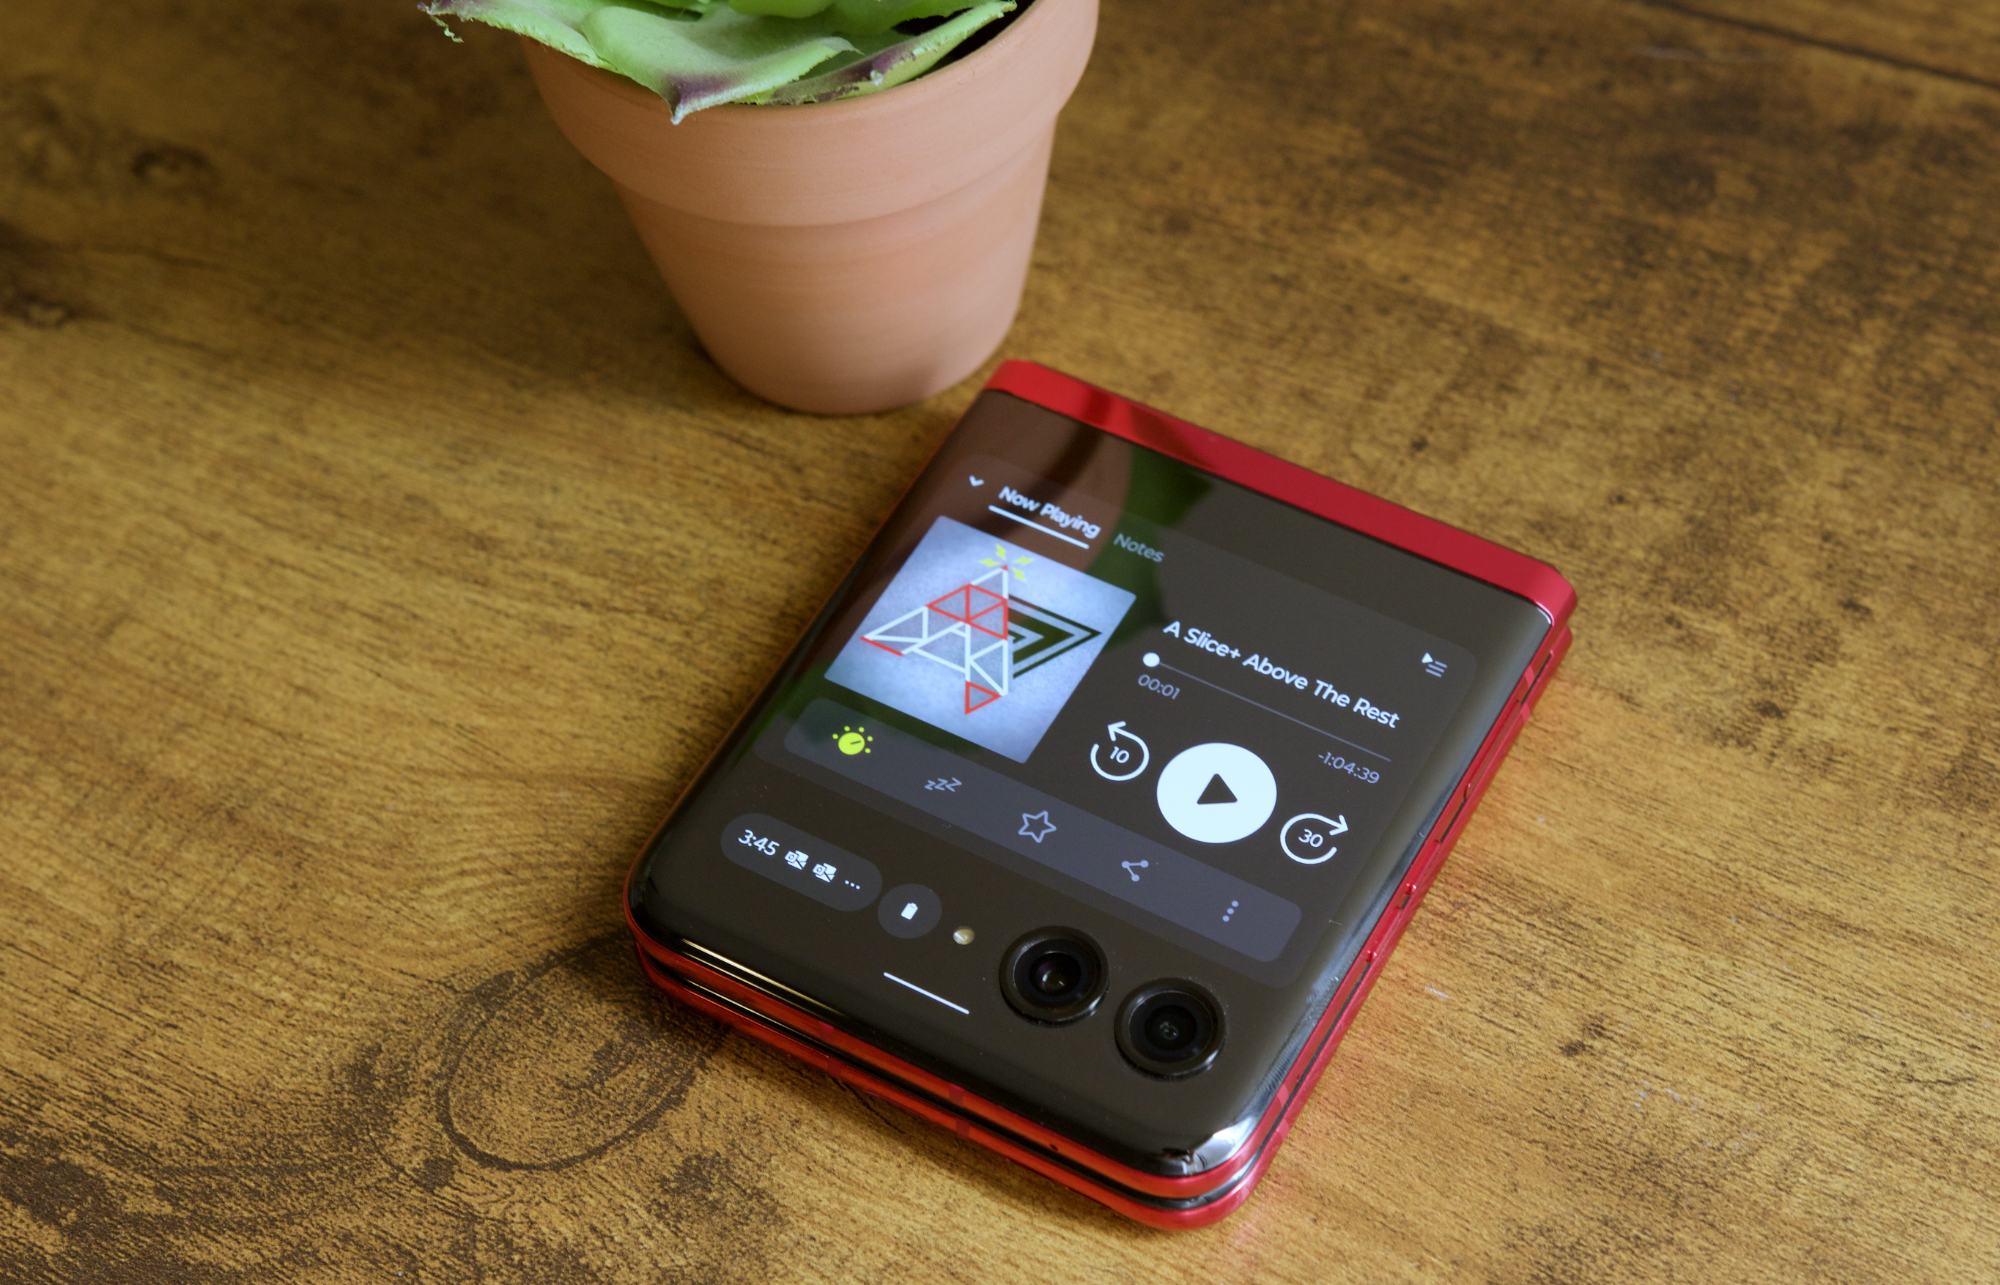 Aplicativo Pocket Casts em execução na tela de capa do Motorola Razr Plus.